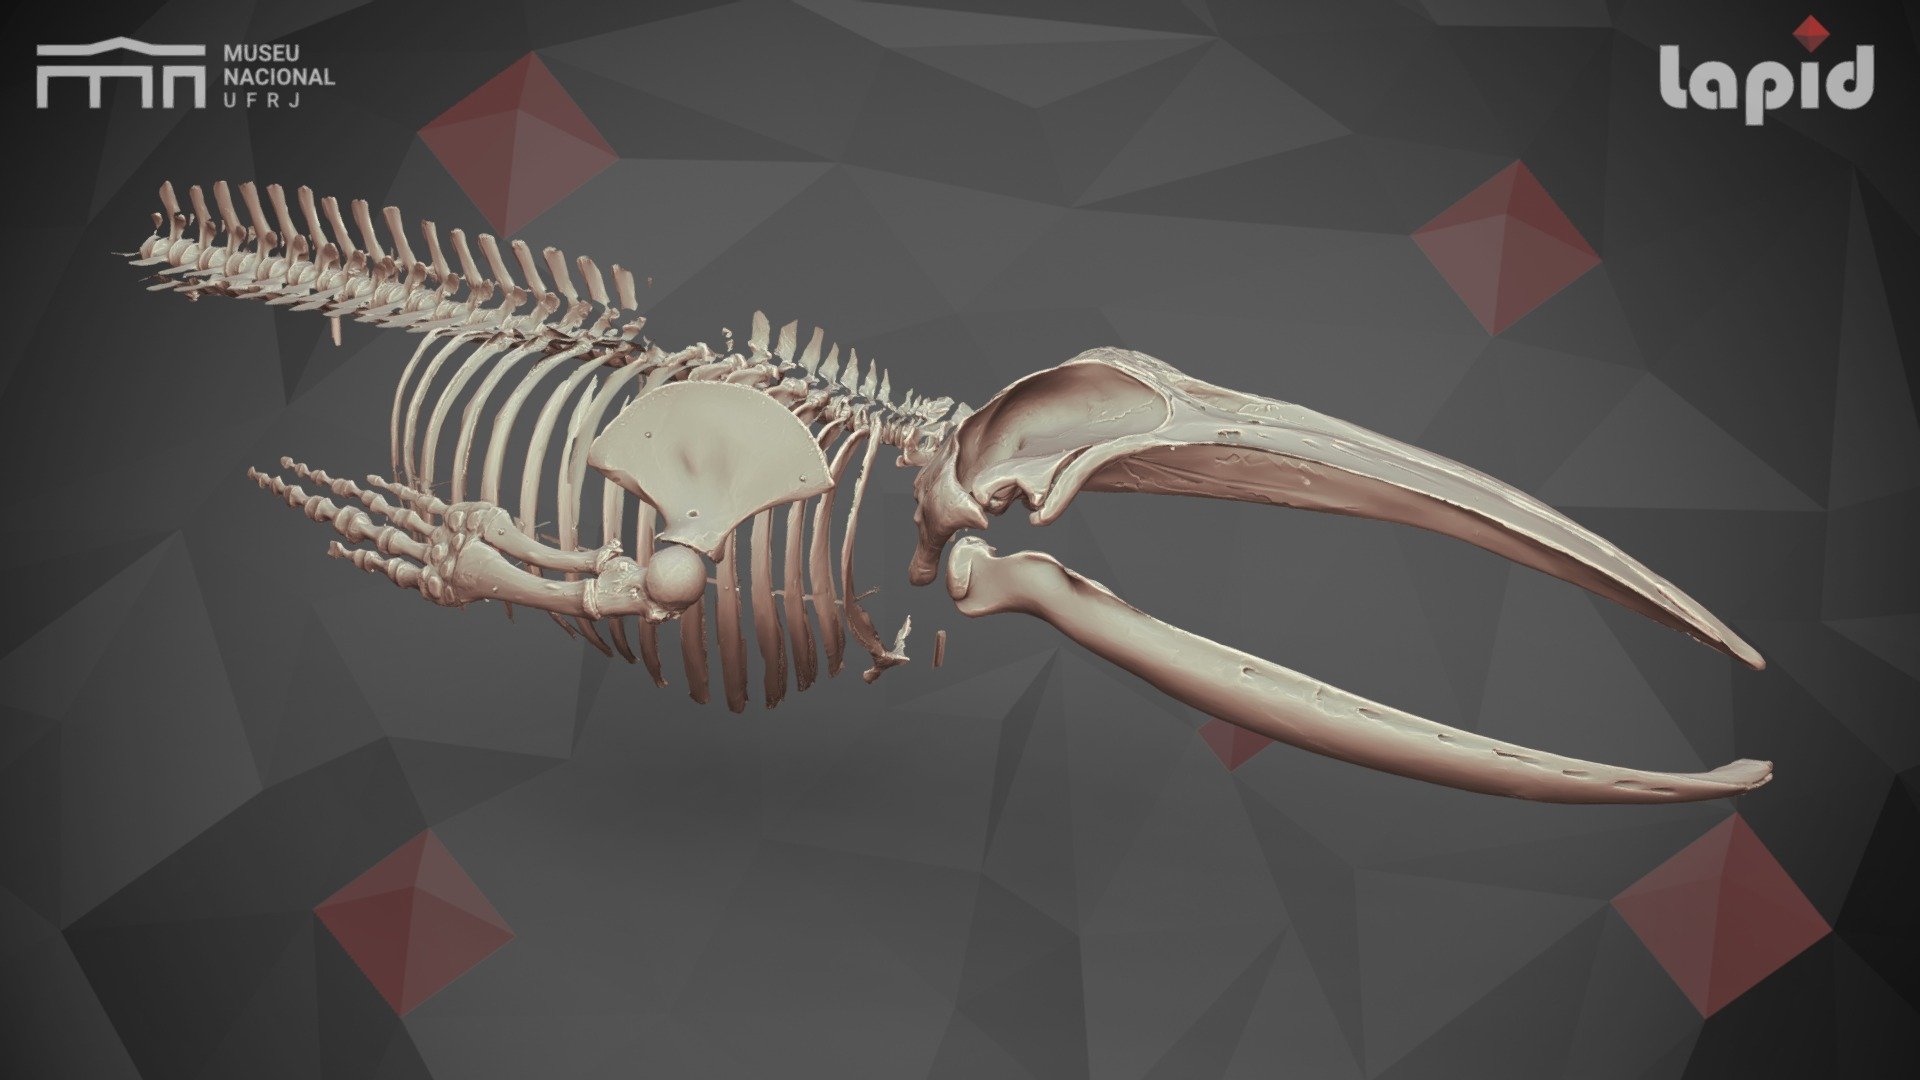 baleen whale skull